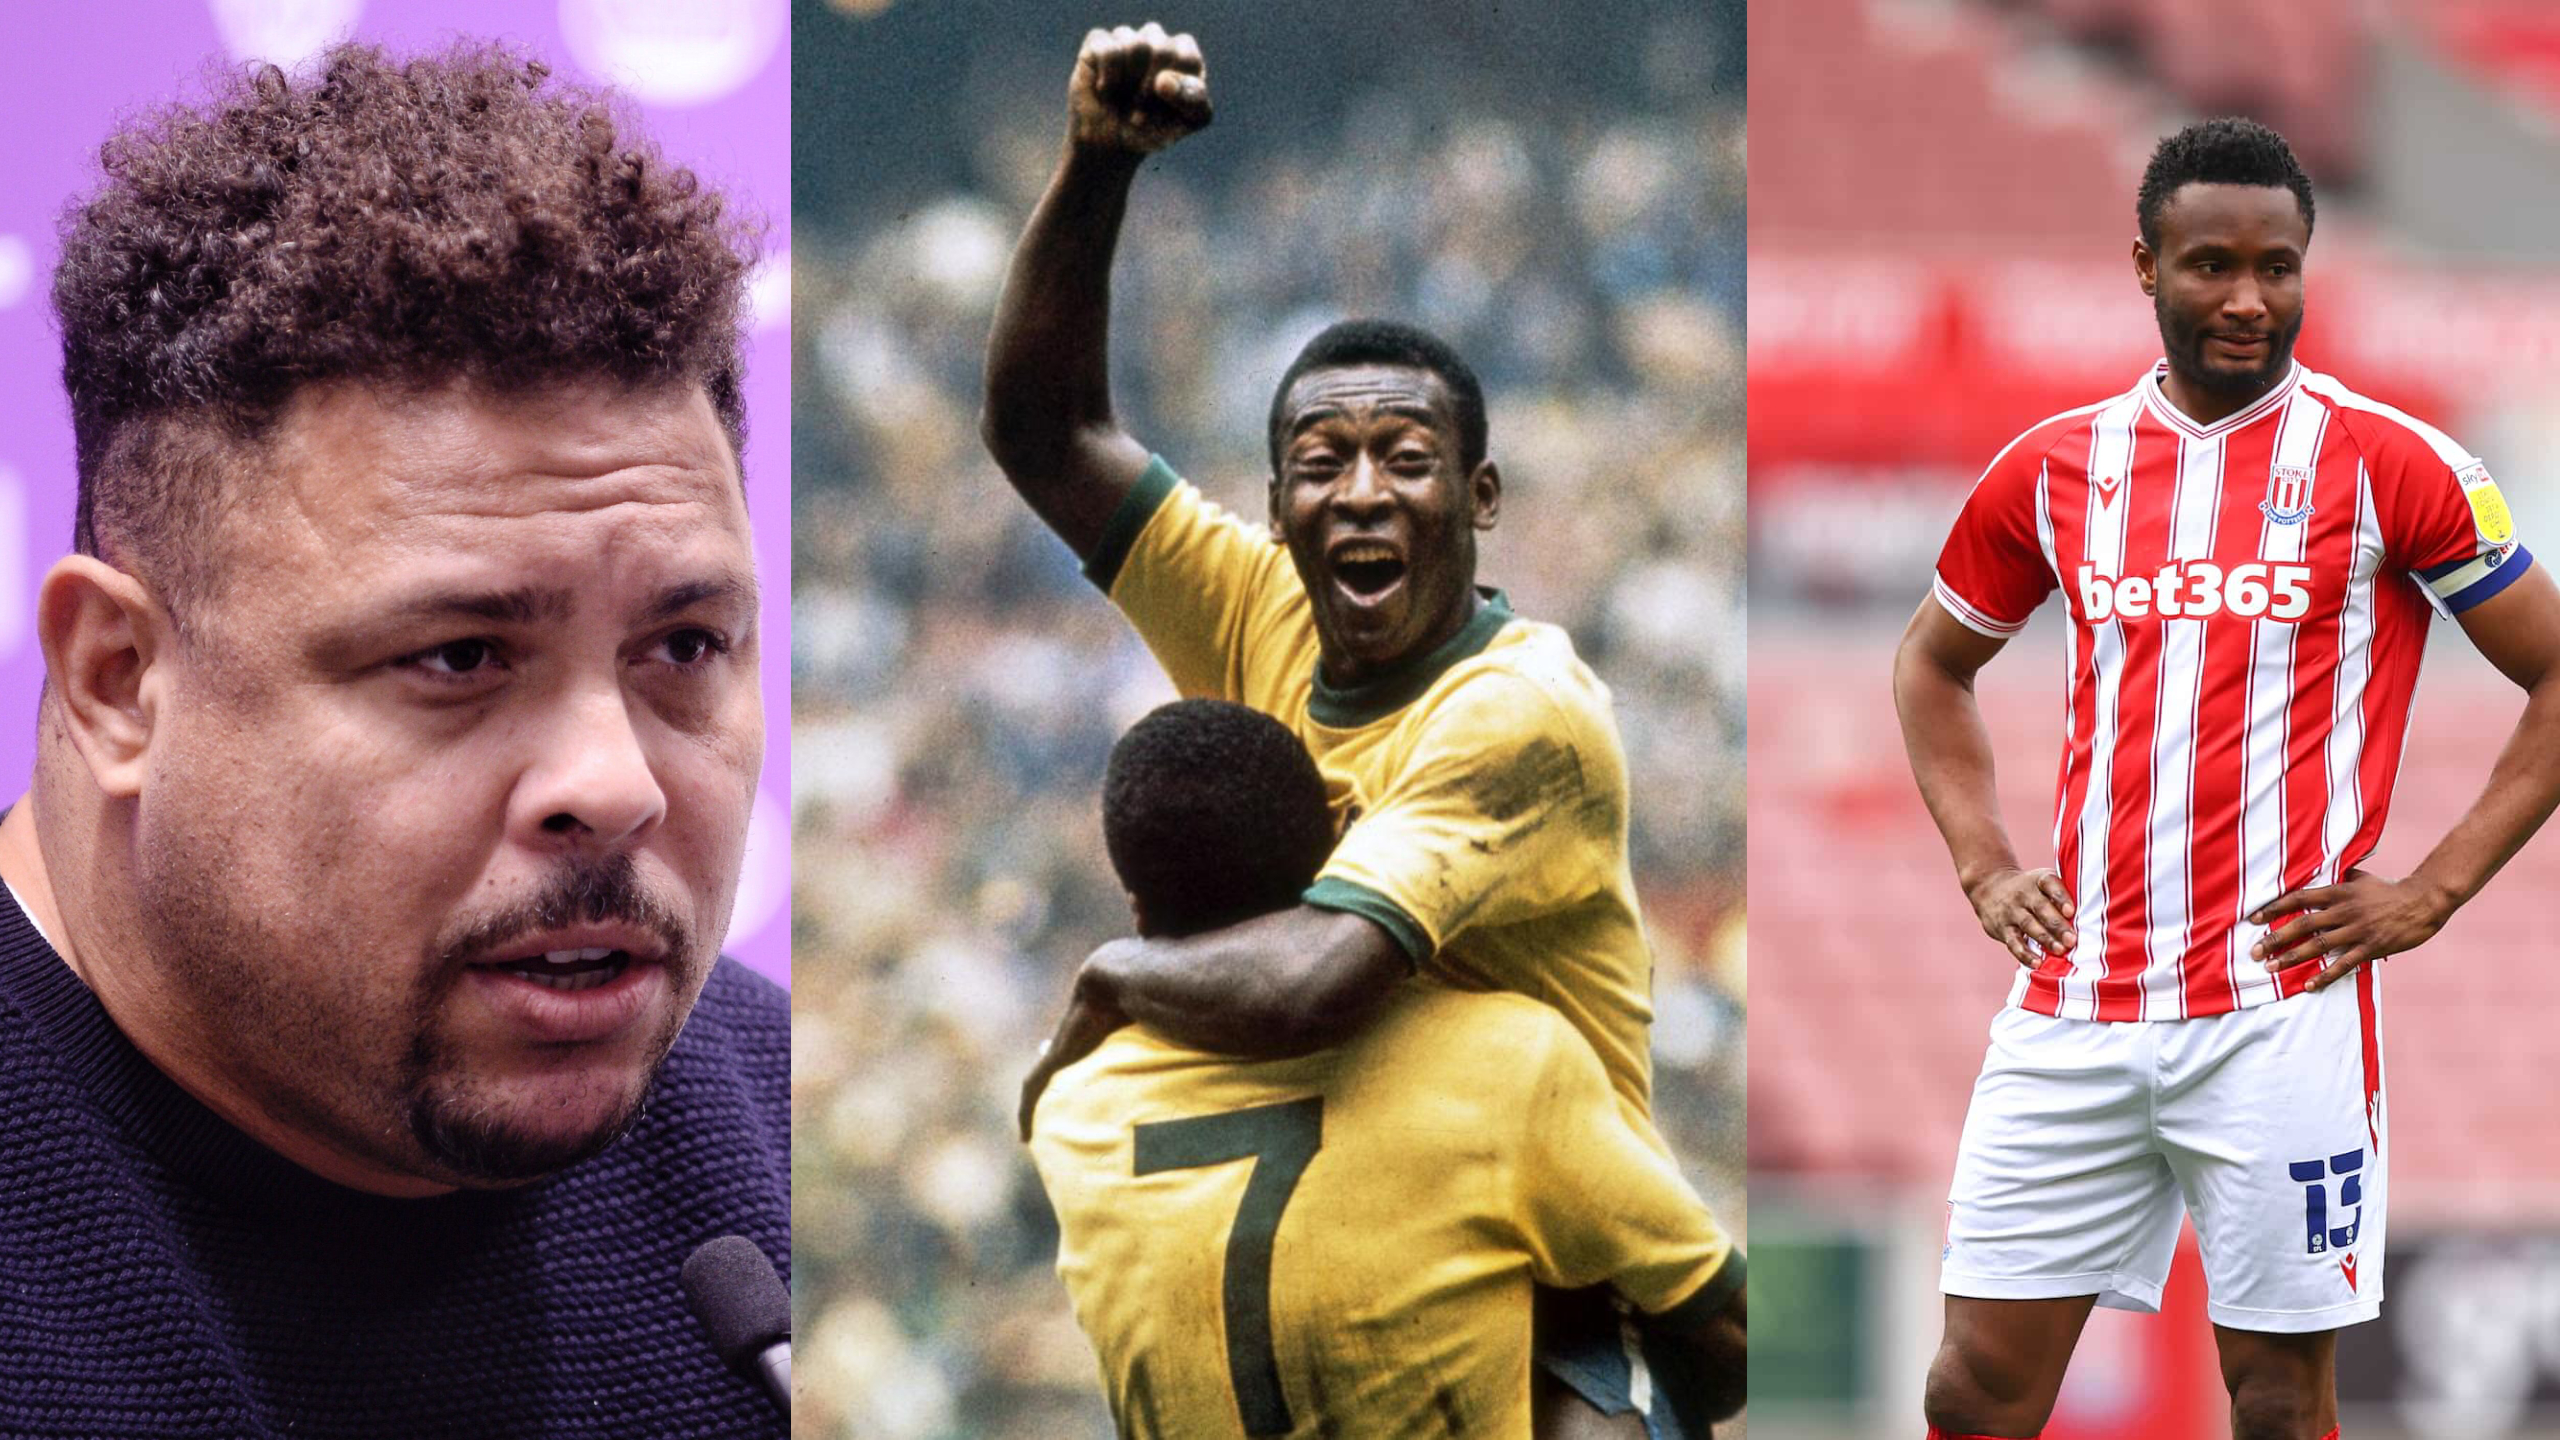 Mikel Obi et Ronaldo Nazario réagissent à la mort de Pelé